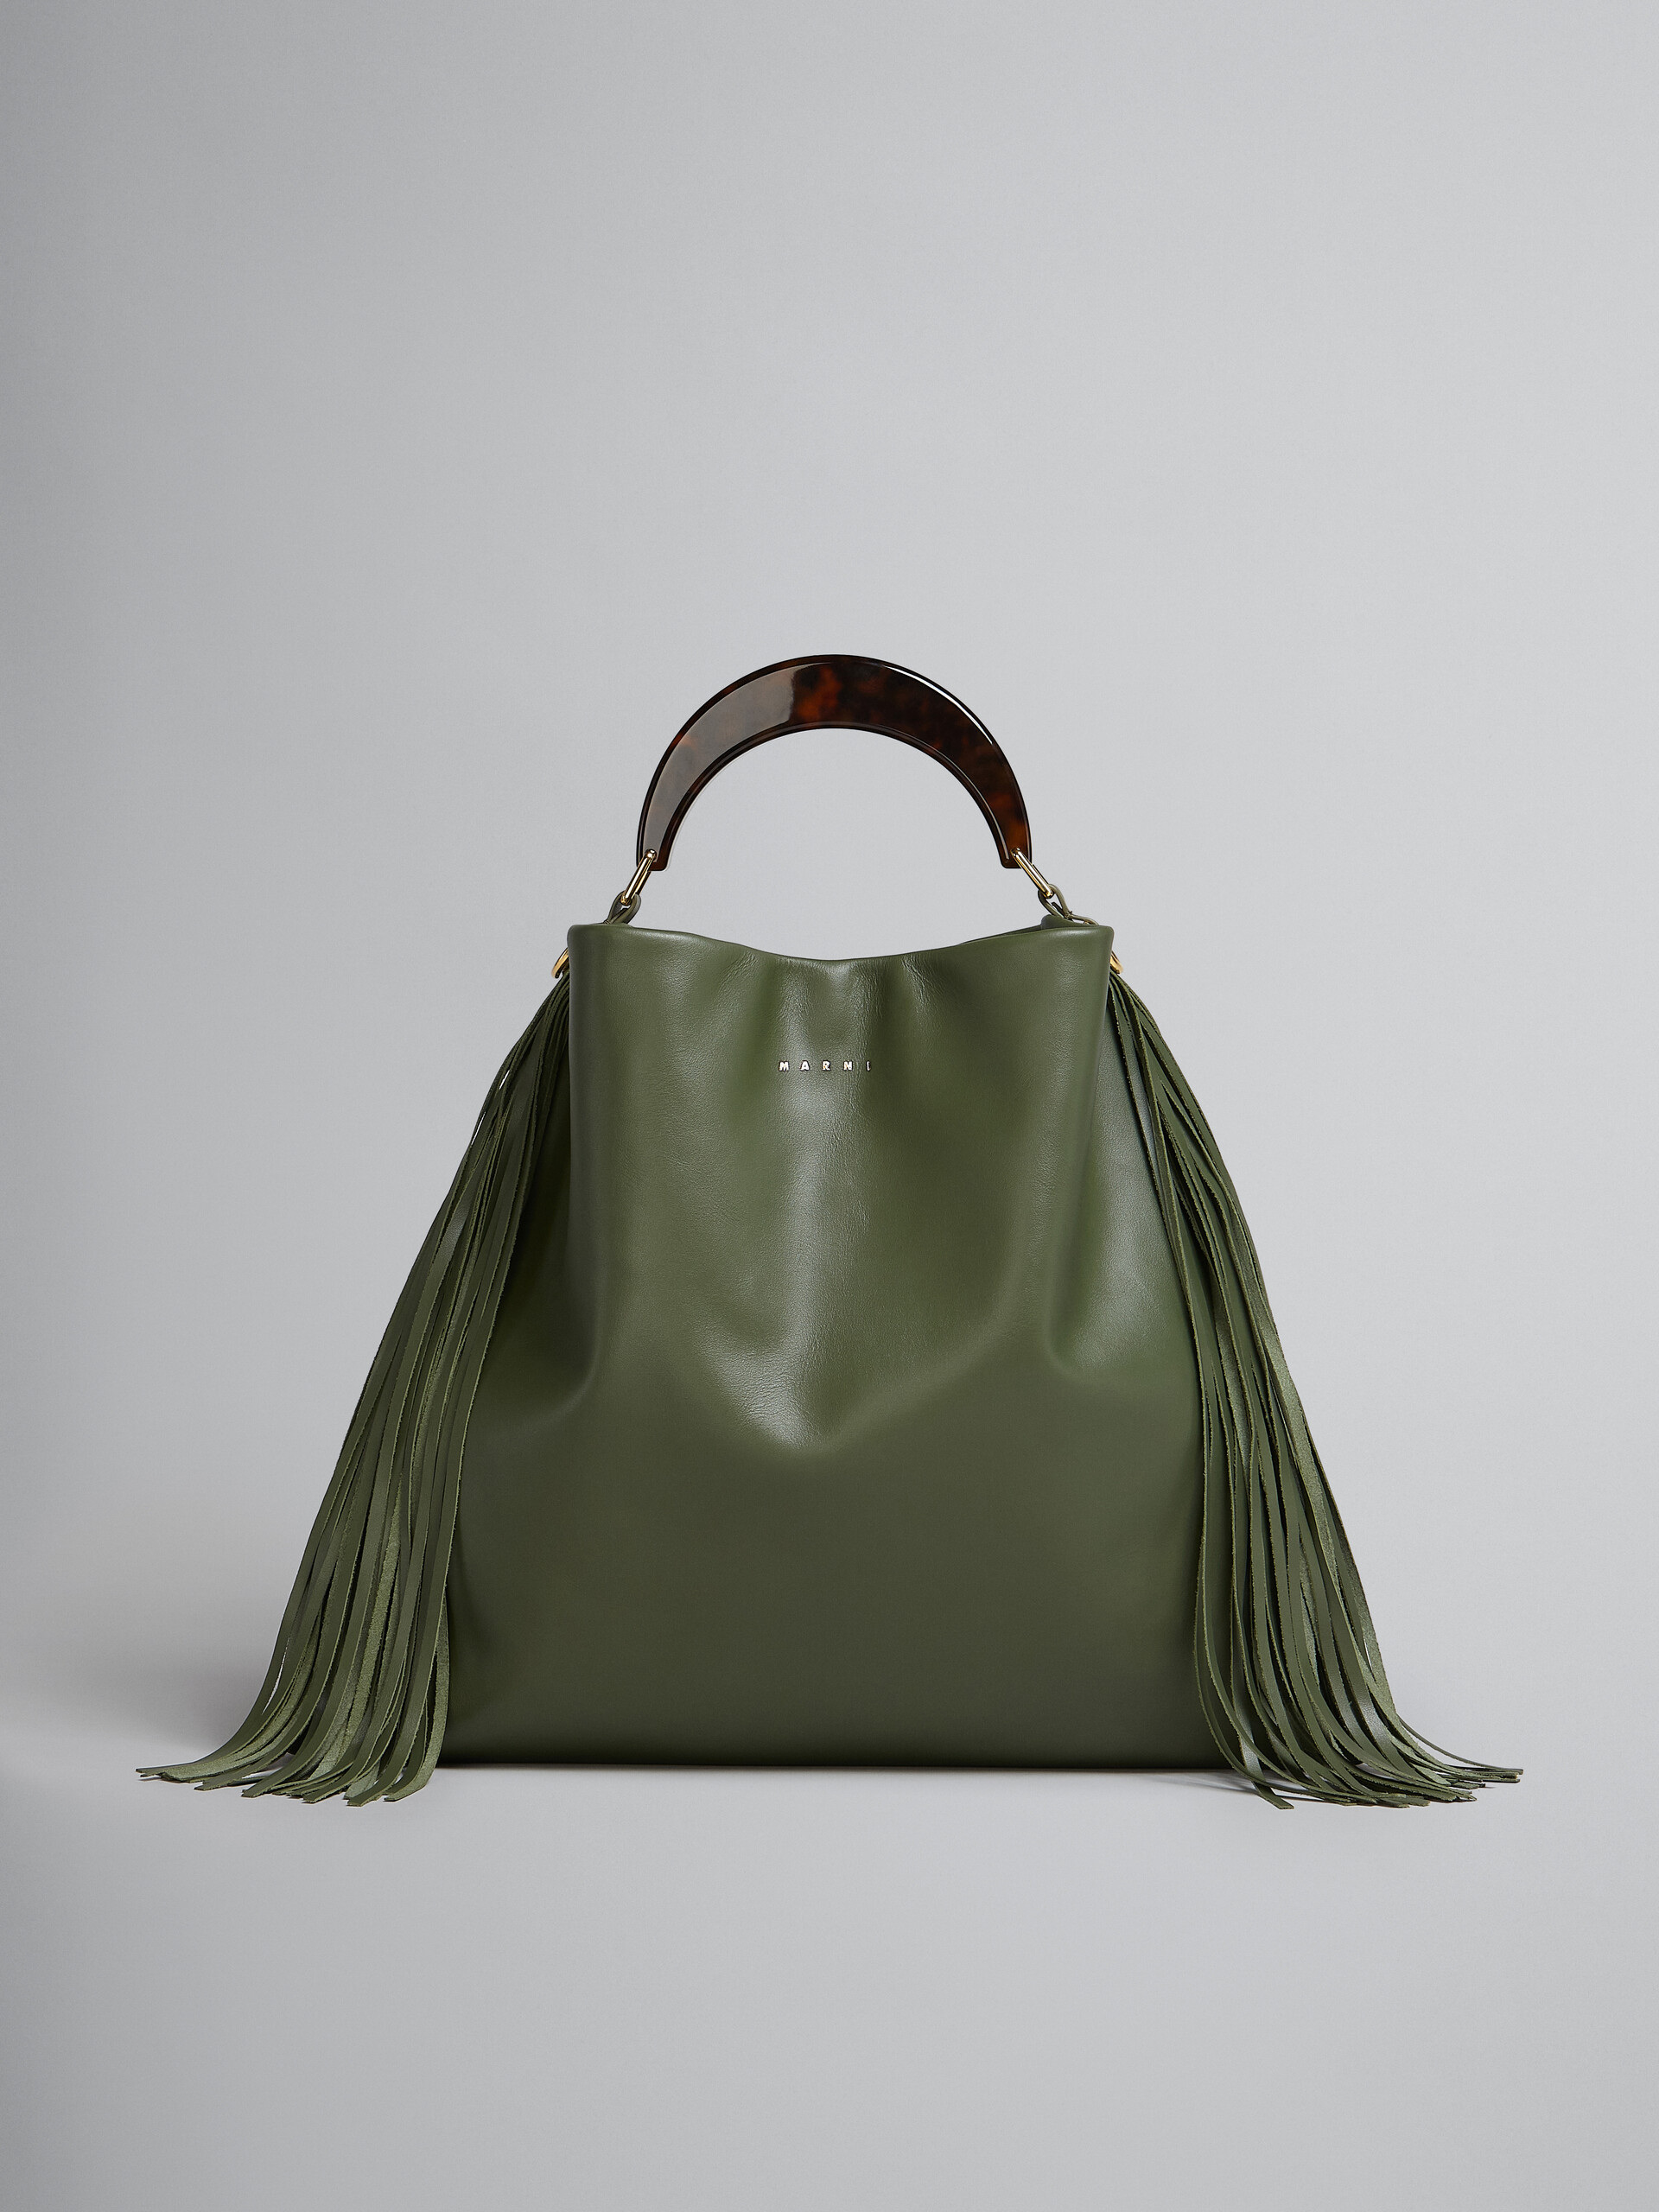 Venice Medium Bag in green leather with fringes - Shoulder Bag - Image 1